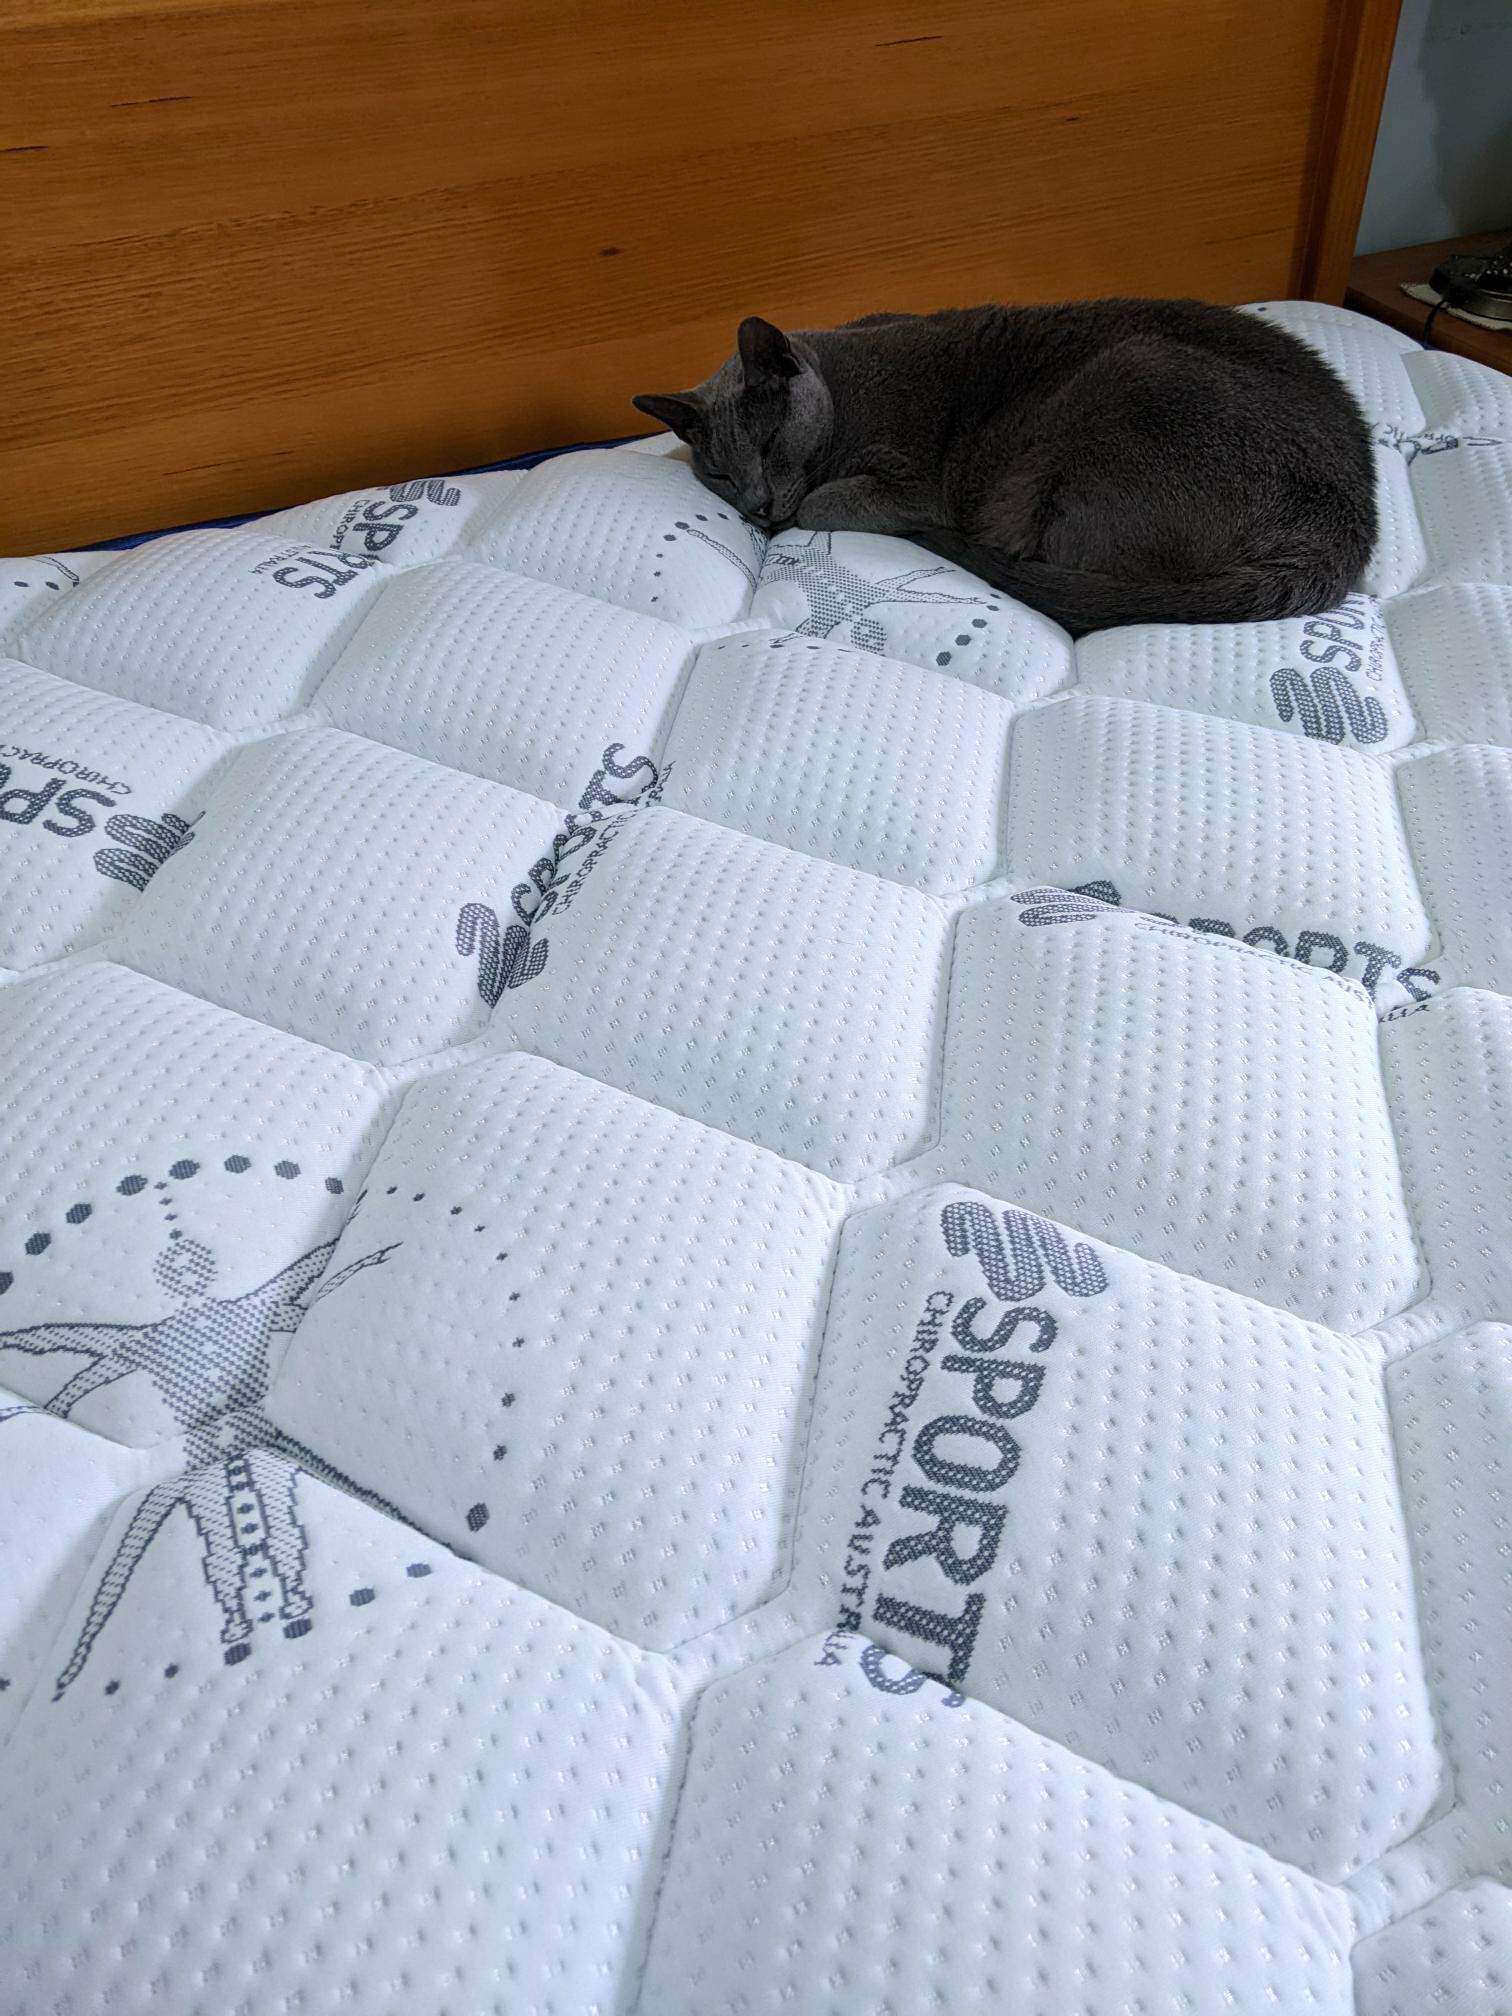 new mattress.jpg